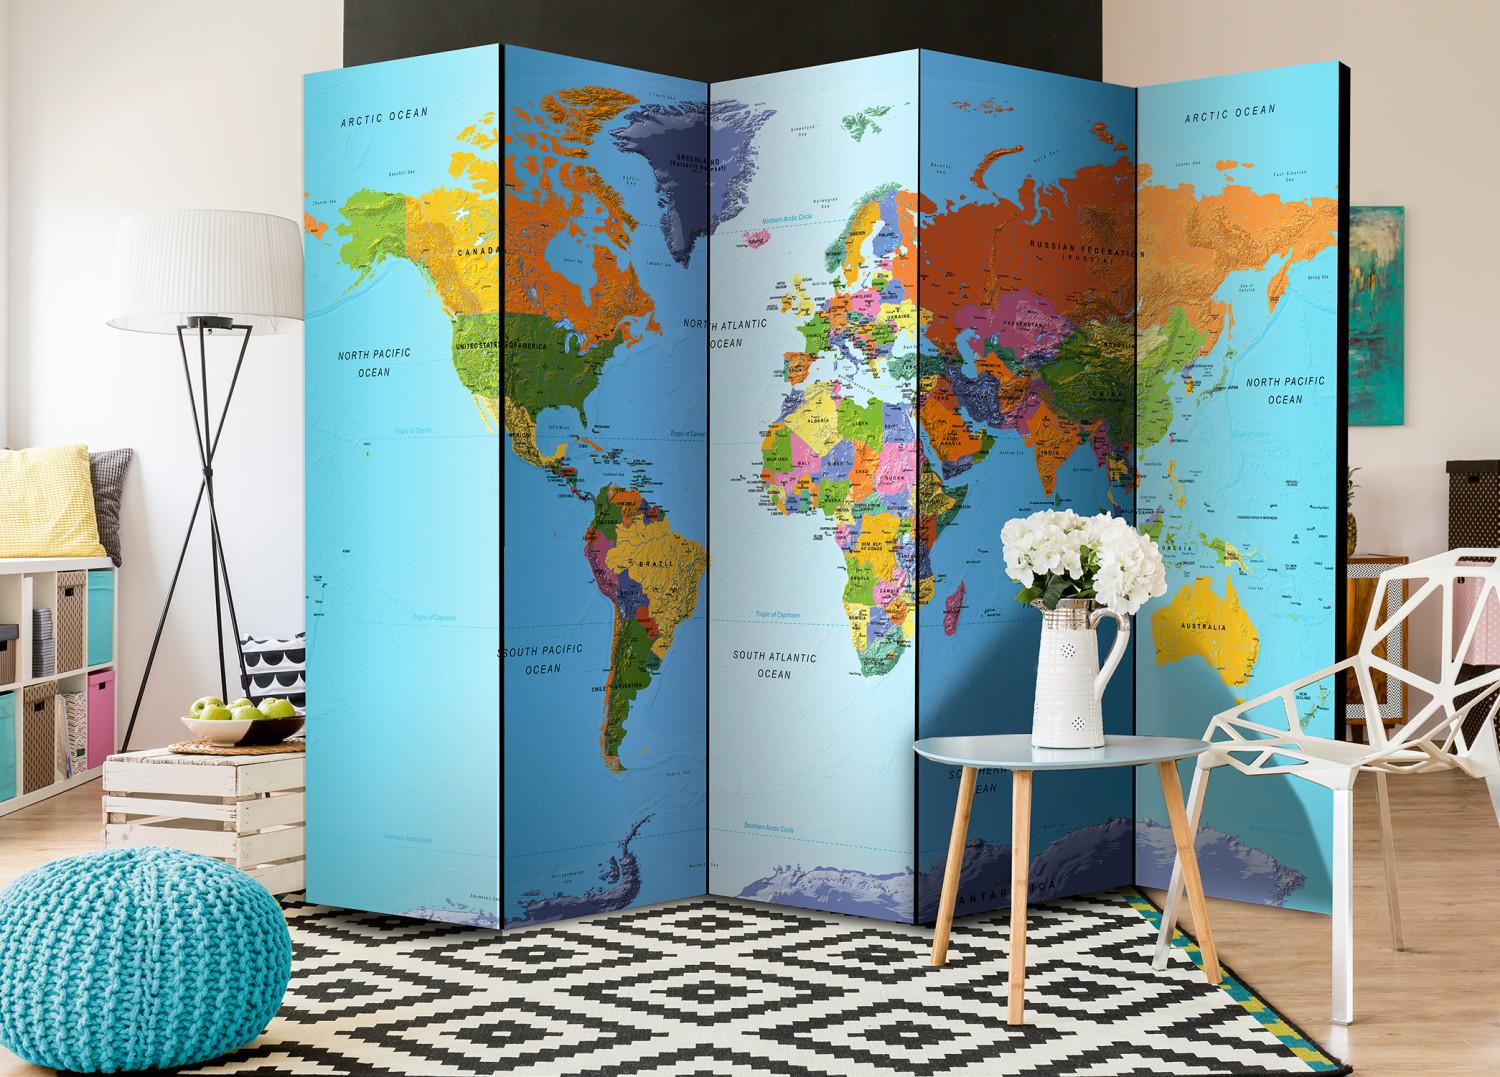 Biombo decorativo Geografía colorida - mapa mundo continentes coloridos escritos